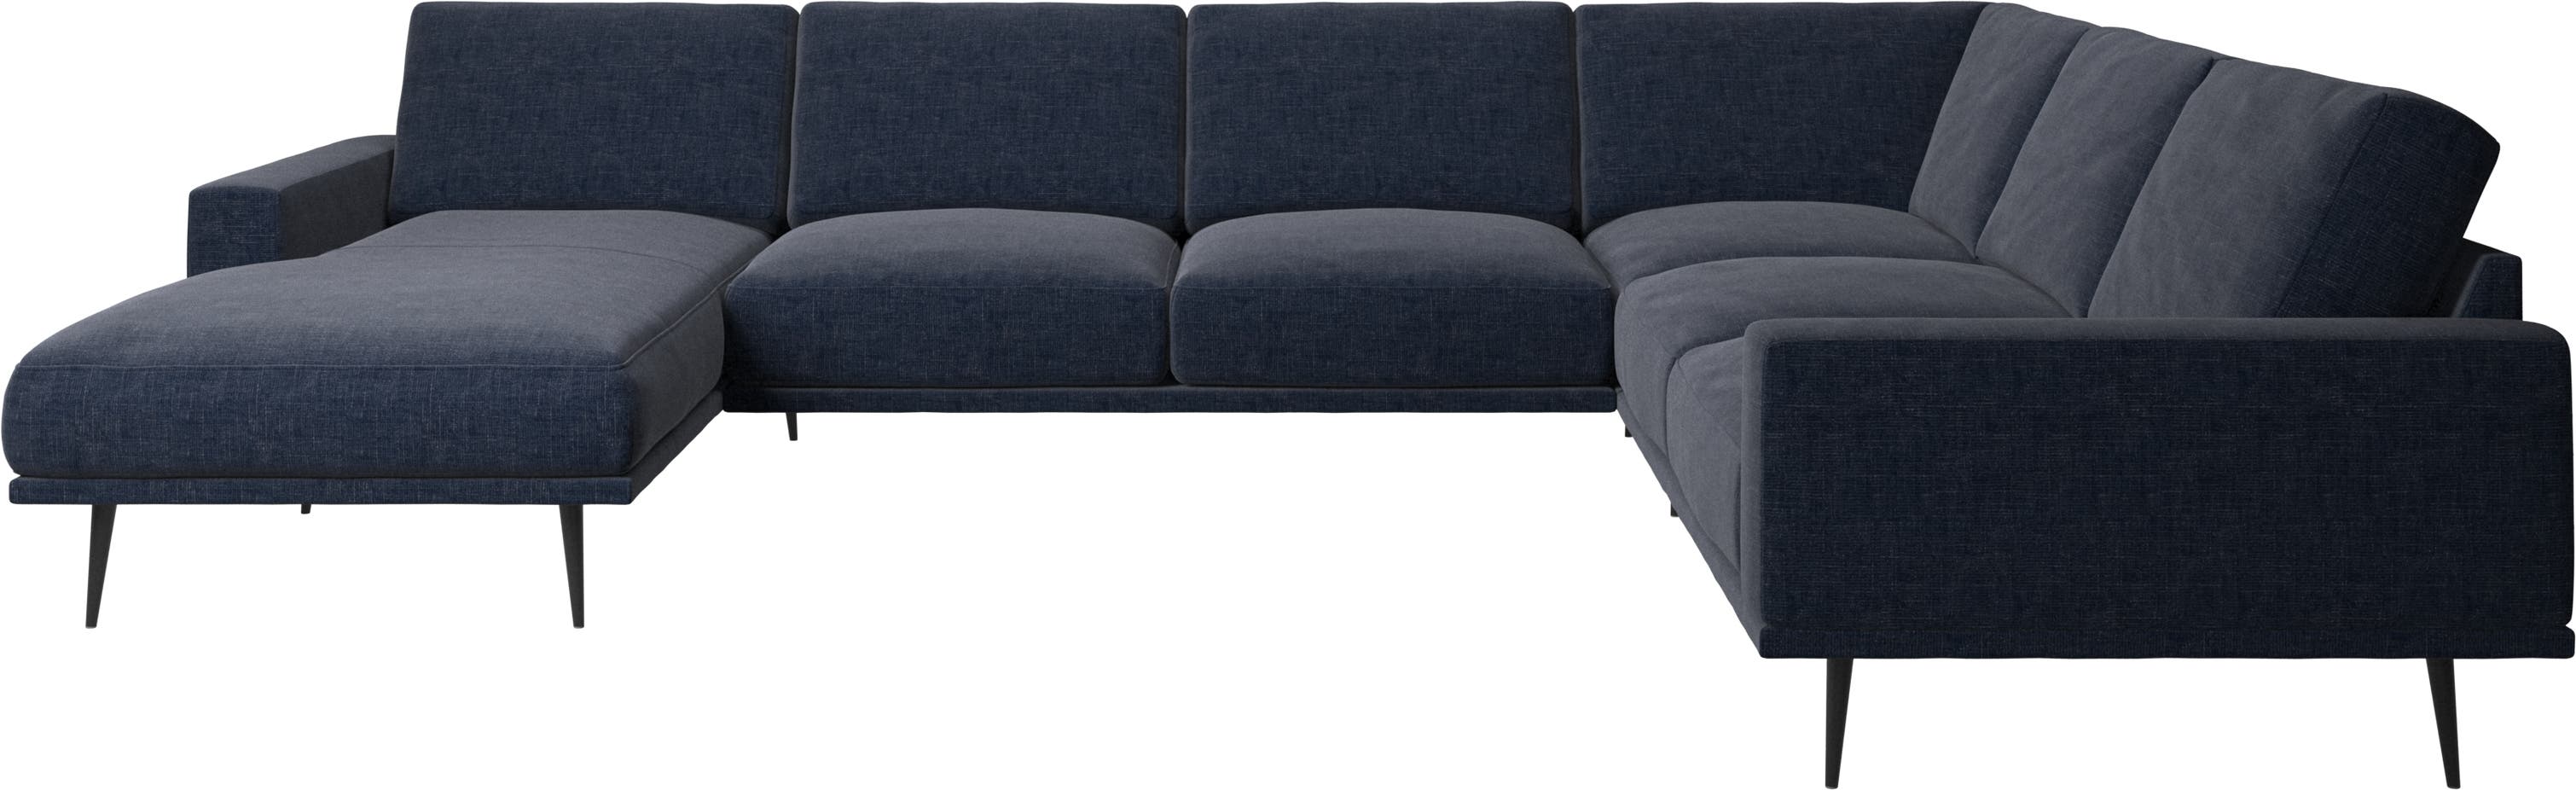 γωνιακός καναπές Carlton με μονάδα resting